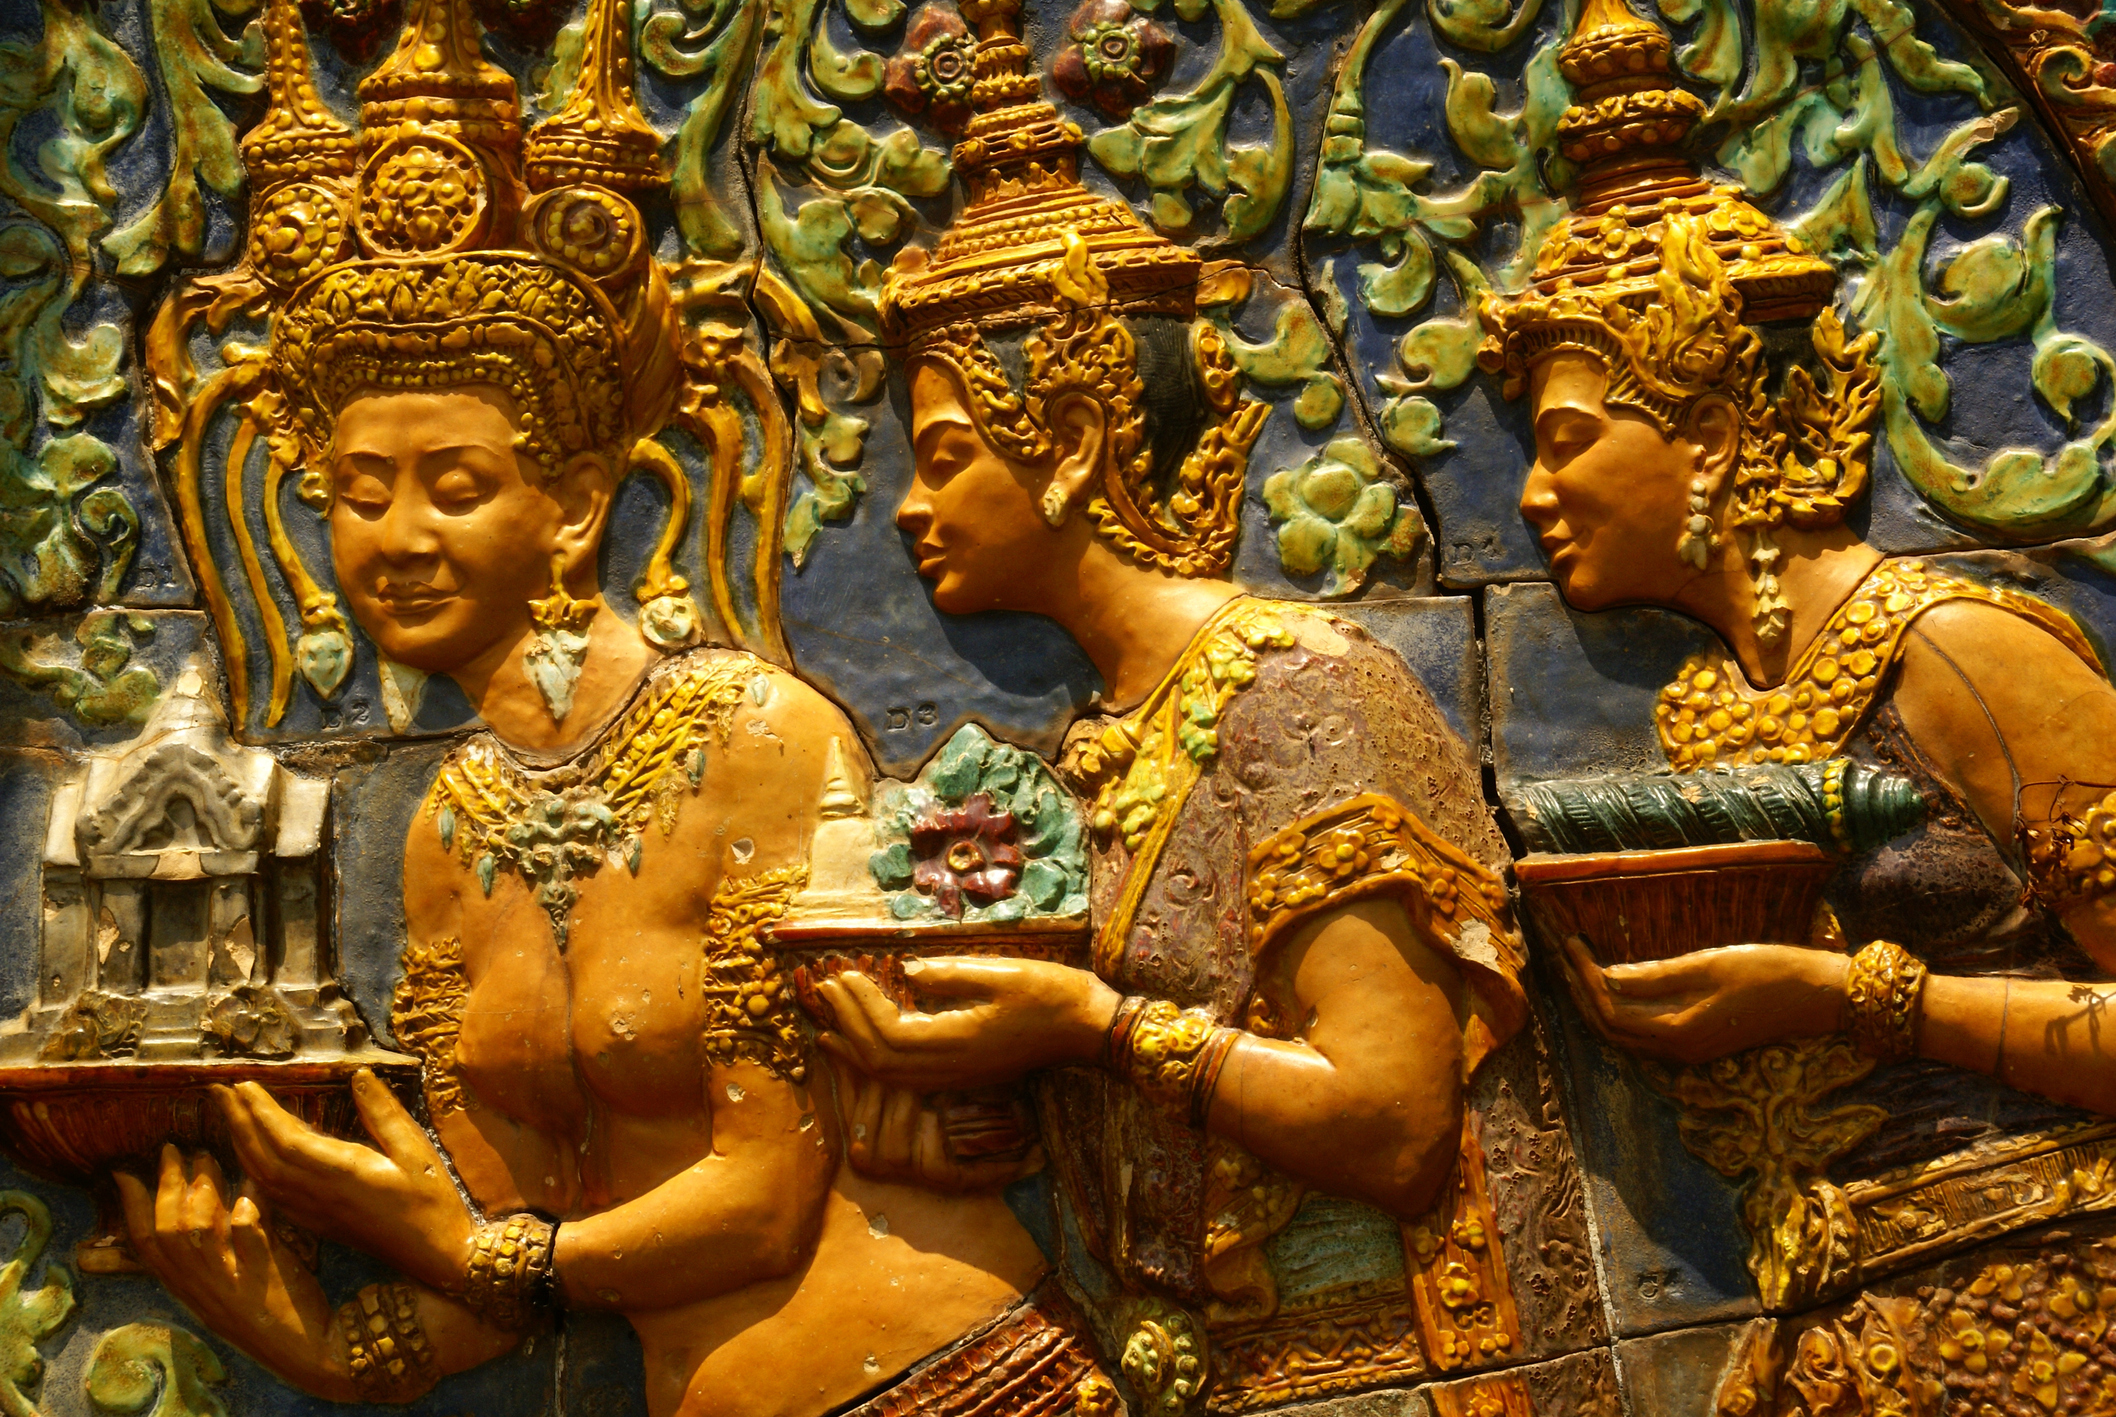 Перлата на Азия - така наричат столицата на Камбоджа Пном Пен. Градът, разположен на мястото, където се събират 3 реки: Басак, Саб и Меконг е на повече от 500 години.Ако искате да отидете там и да се потопите в тази многовековна история, култура и красива природа в съчетание с древни културни паметници, разгледайте нашата галерия